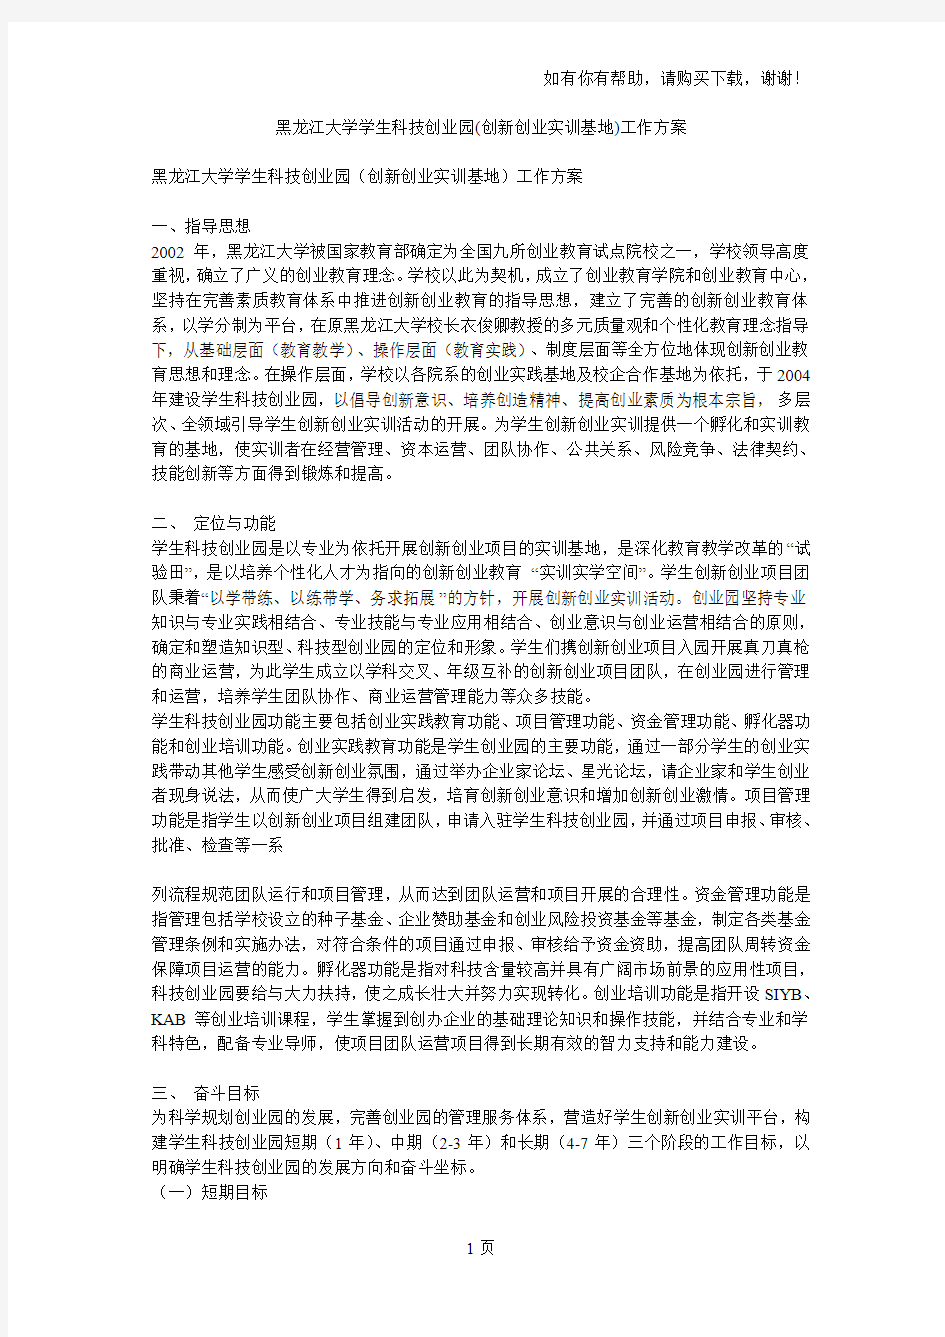 黑龙江大学学生科技创业园(创新创业实训基地)工作方案